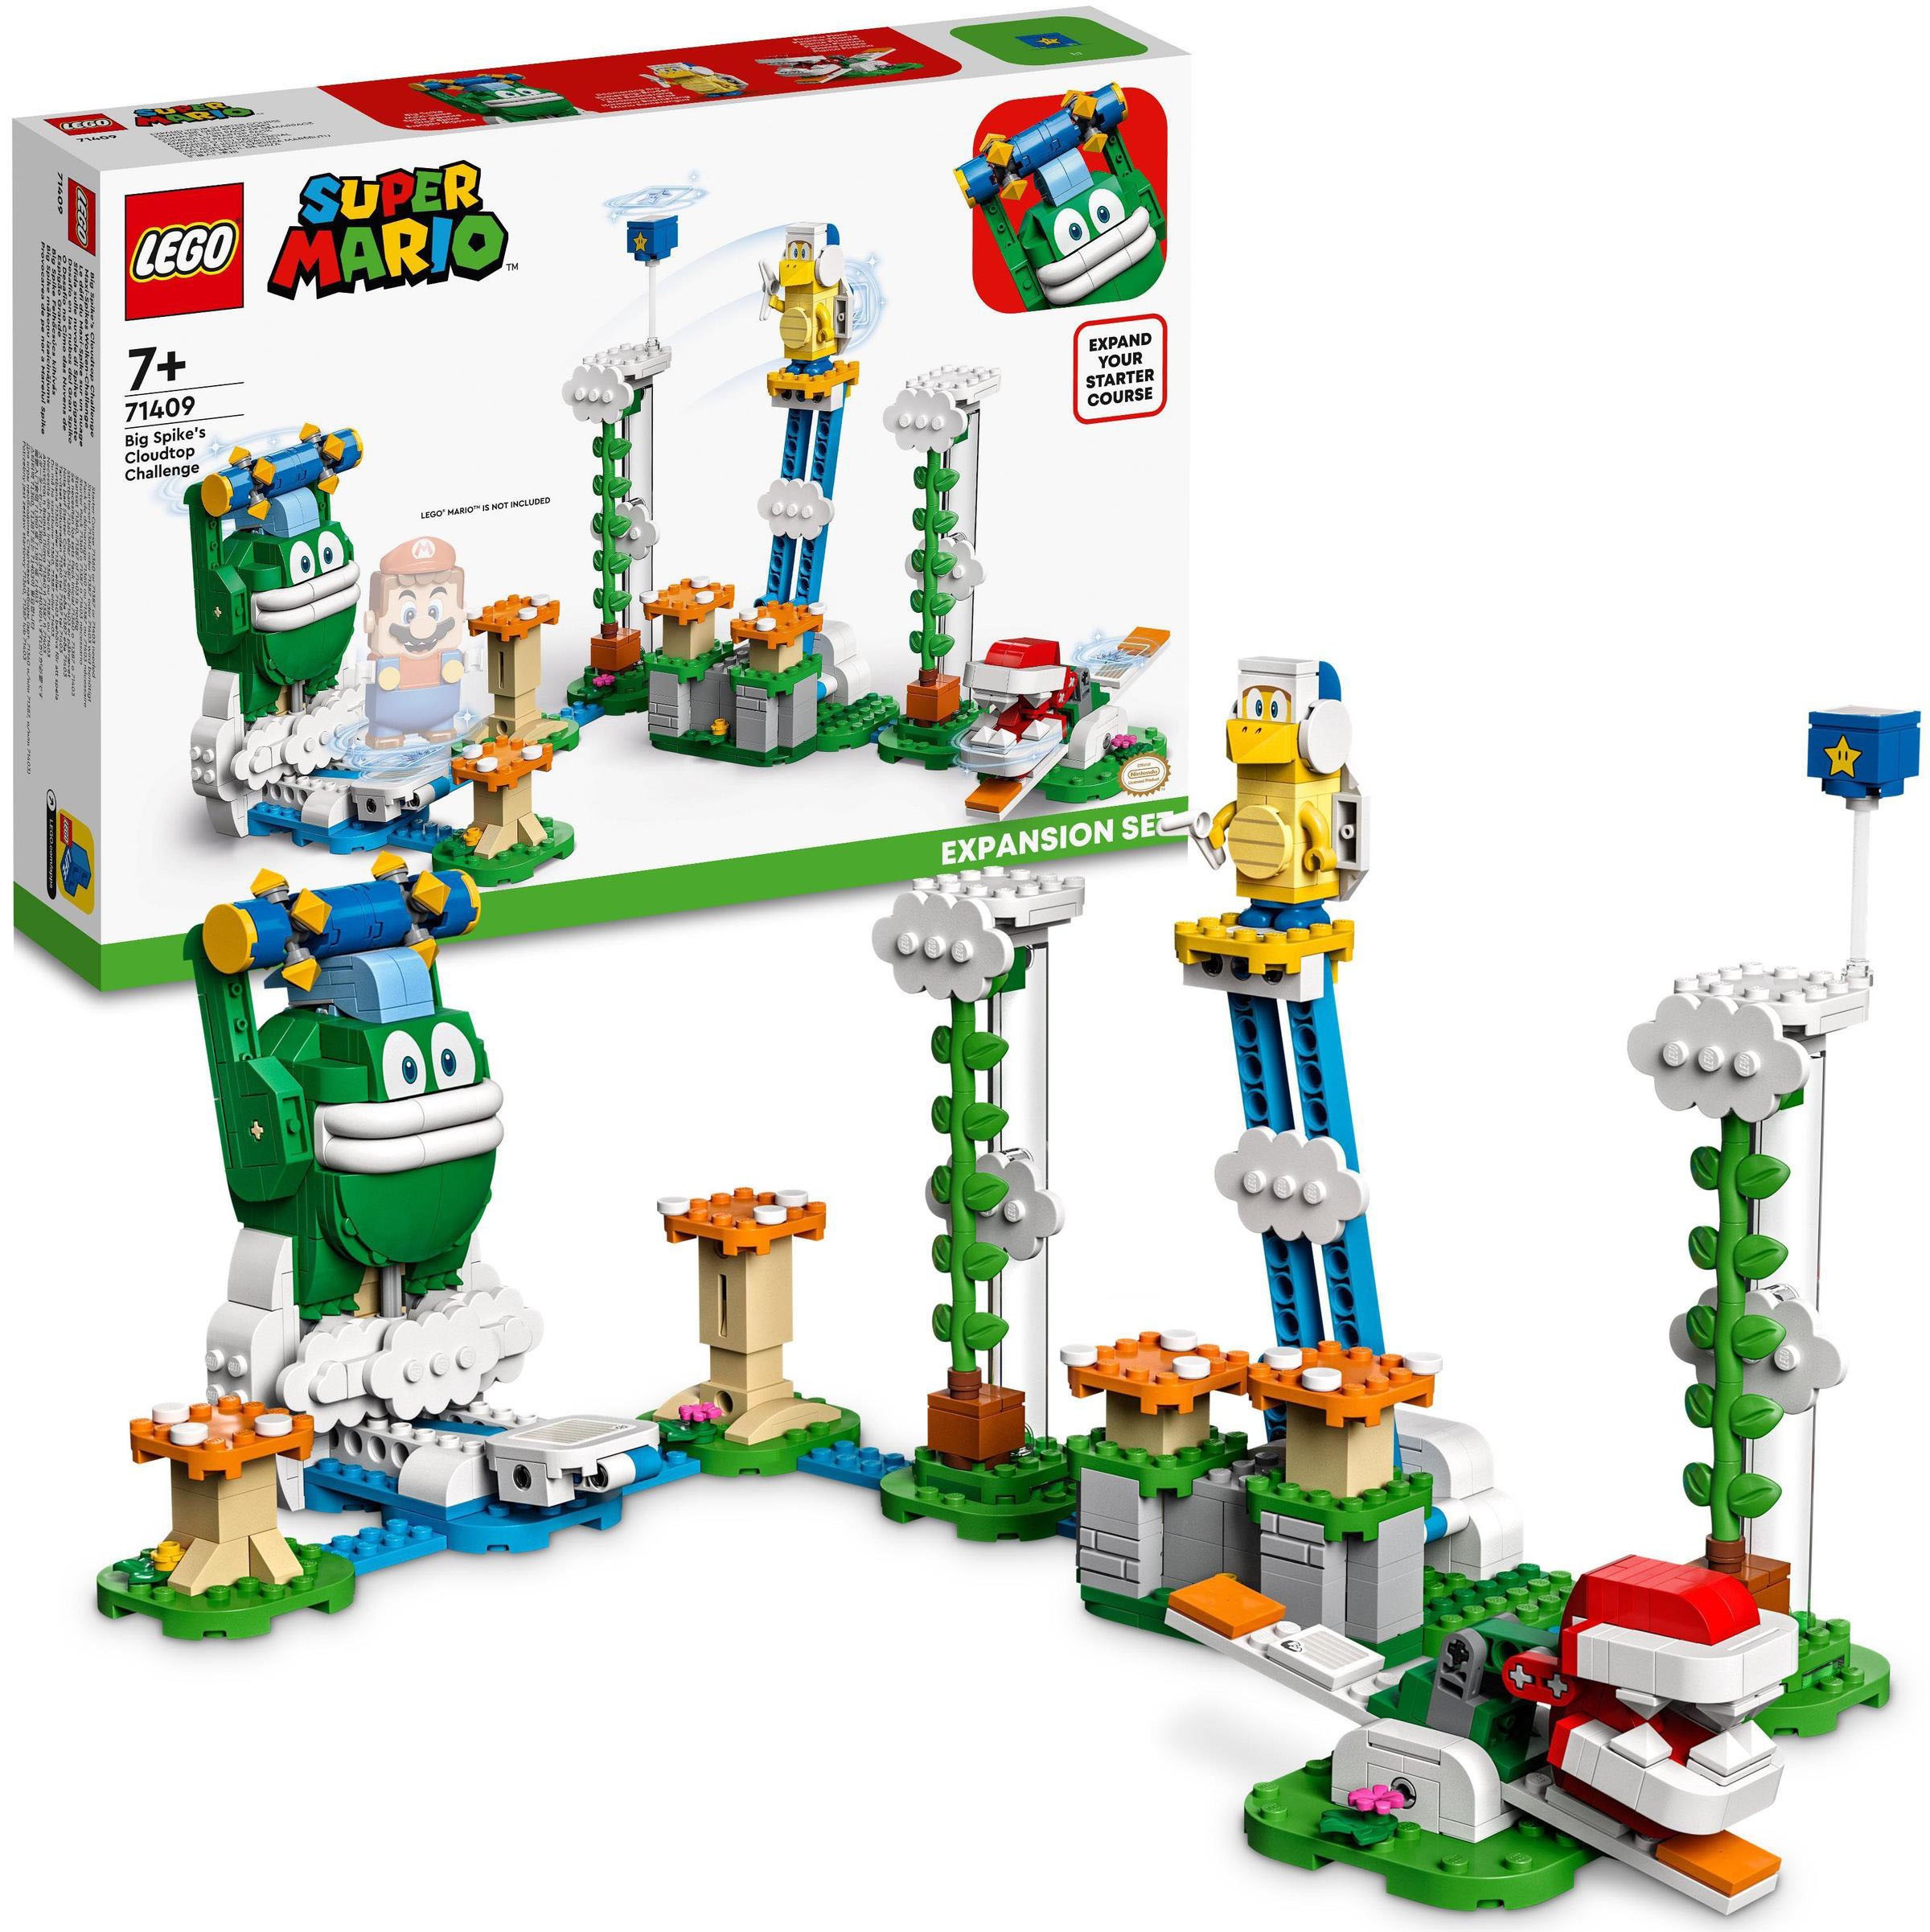 LEGO Konstruktionsspielsteine Maxi-Spikes Wolken-Challenge – Erweiterungsset (71409), LEGO Super Mario, (540 St.), Made in Europe